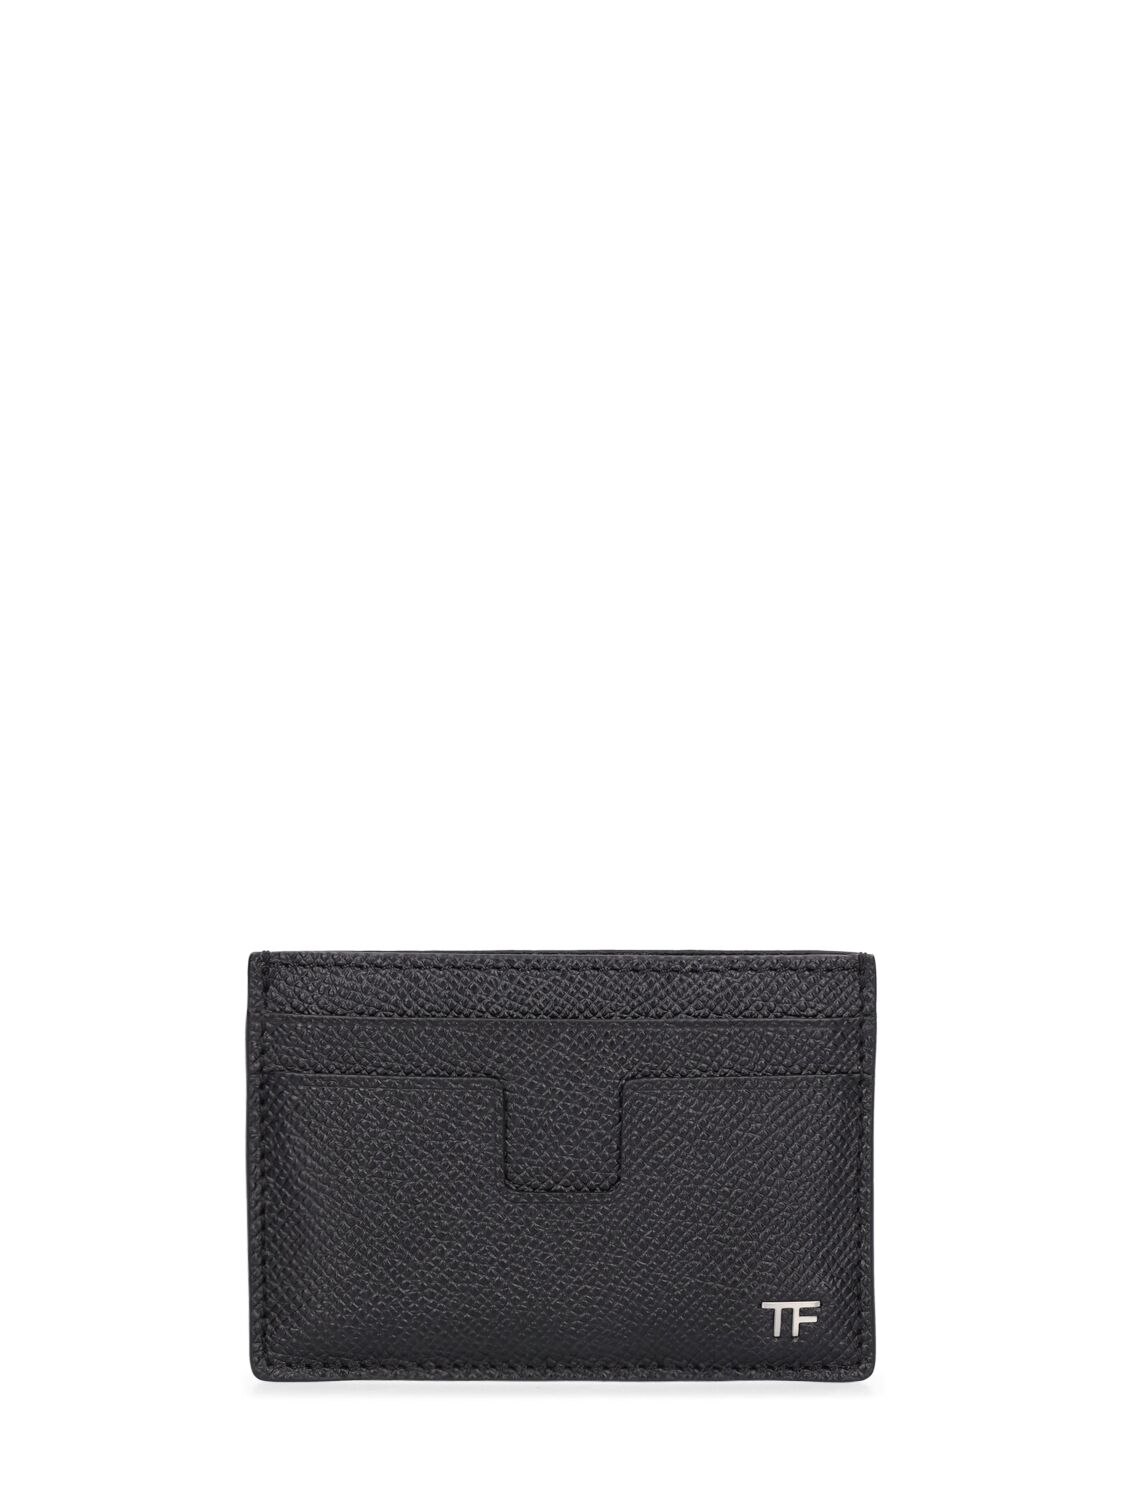 Image of Small Grain Saffiano Leather Card Case